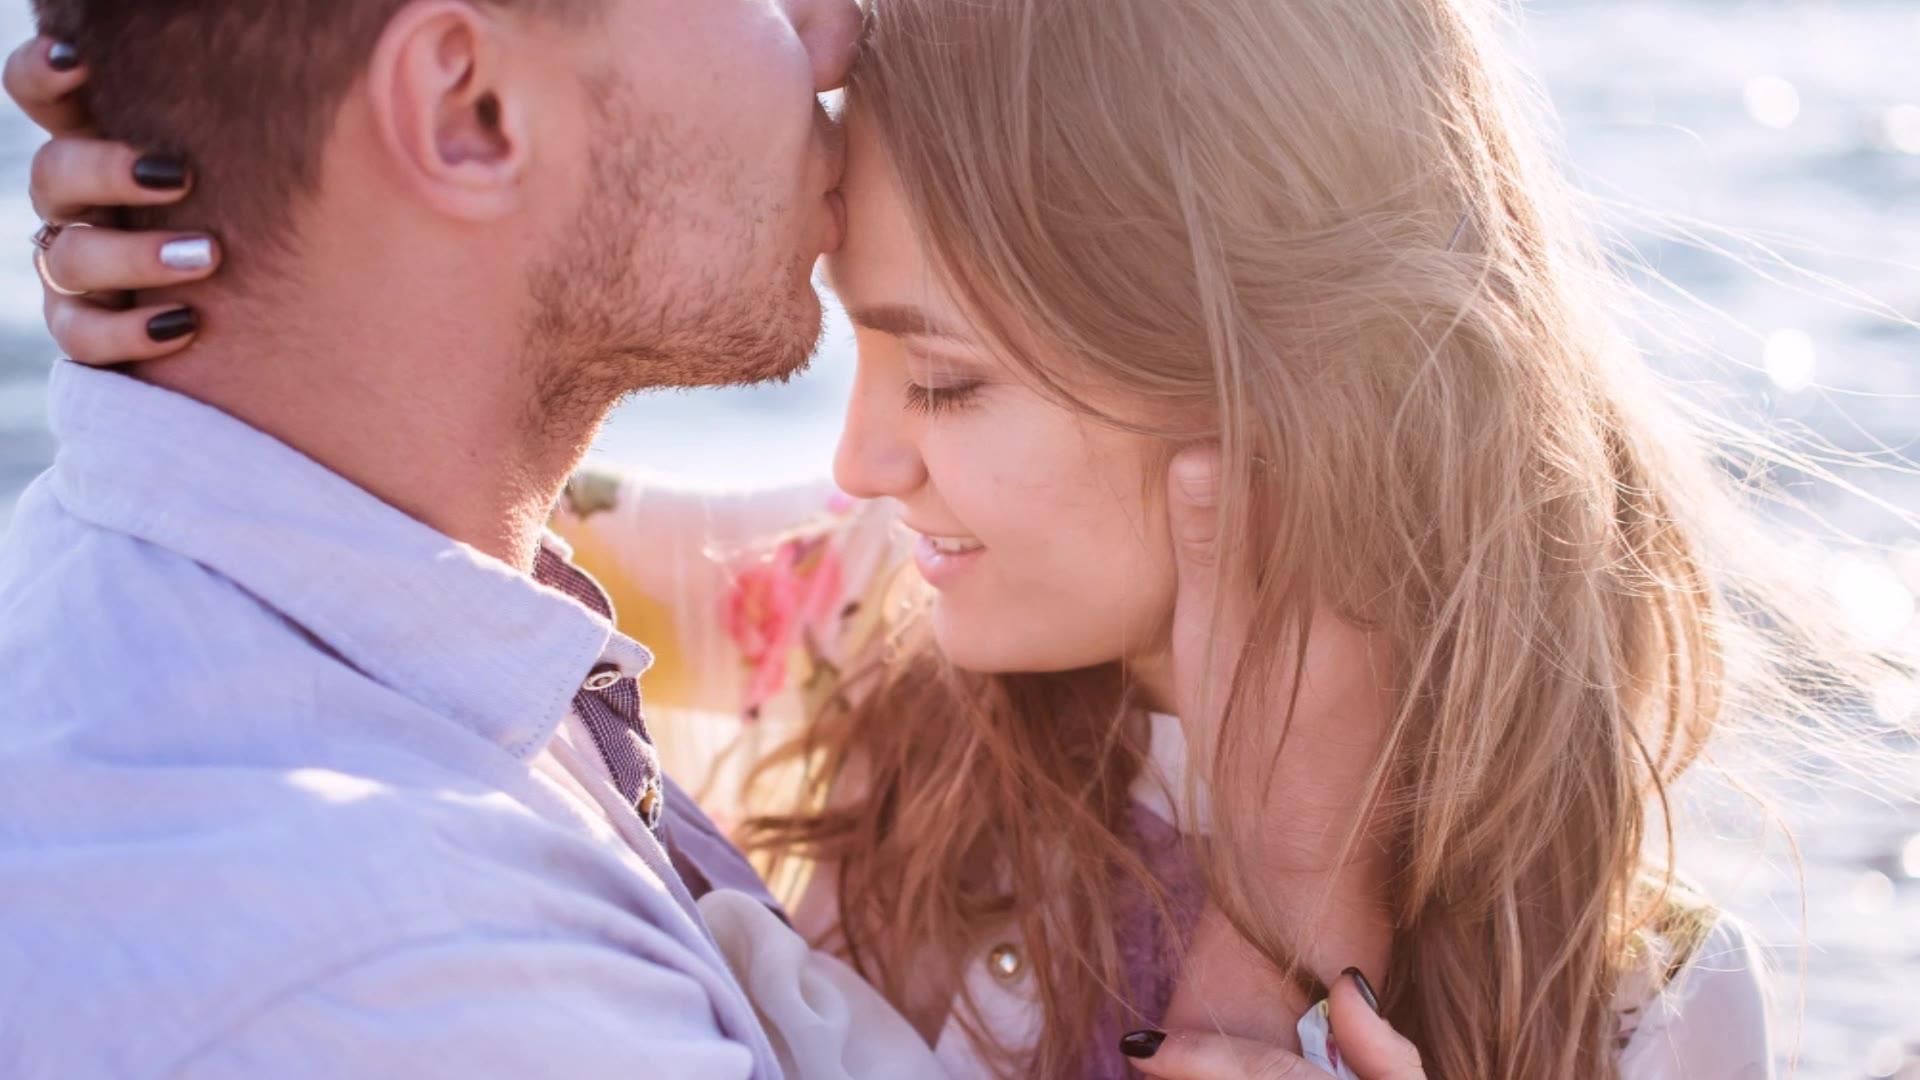 7 ознак того, що ваш чоловік щасливий у шлюбі з вами